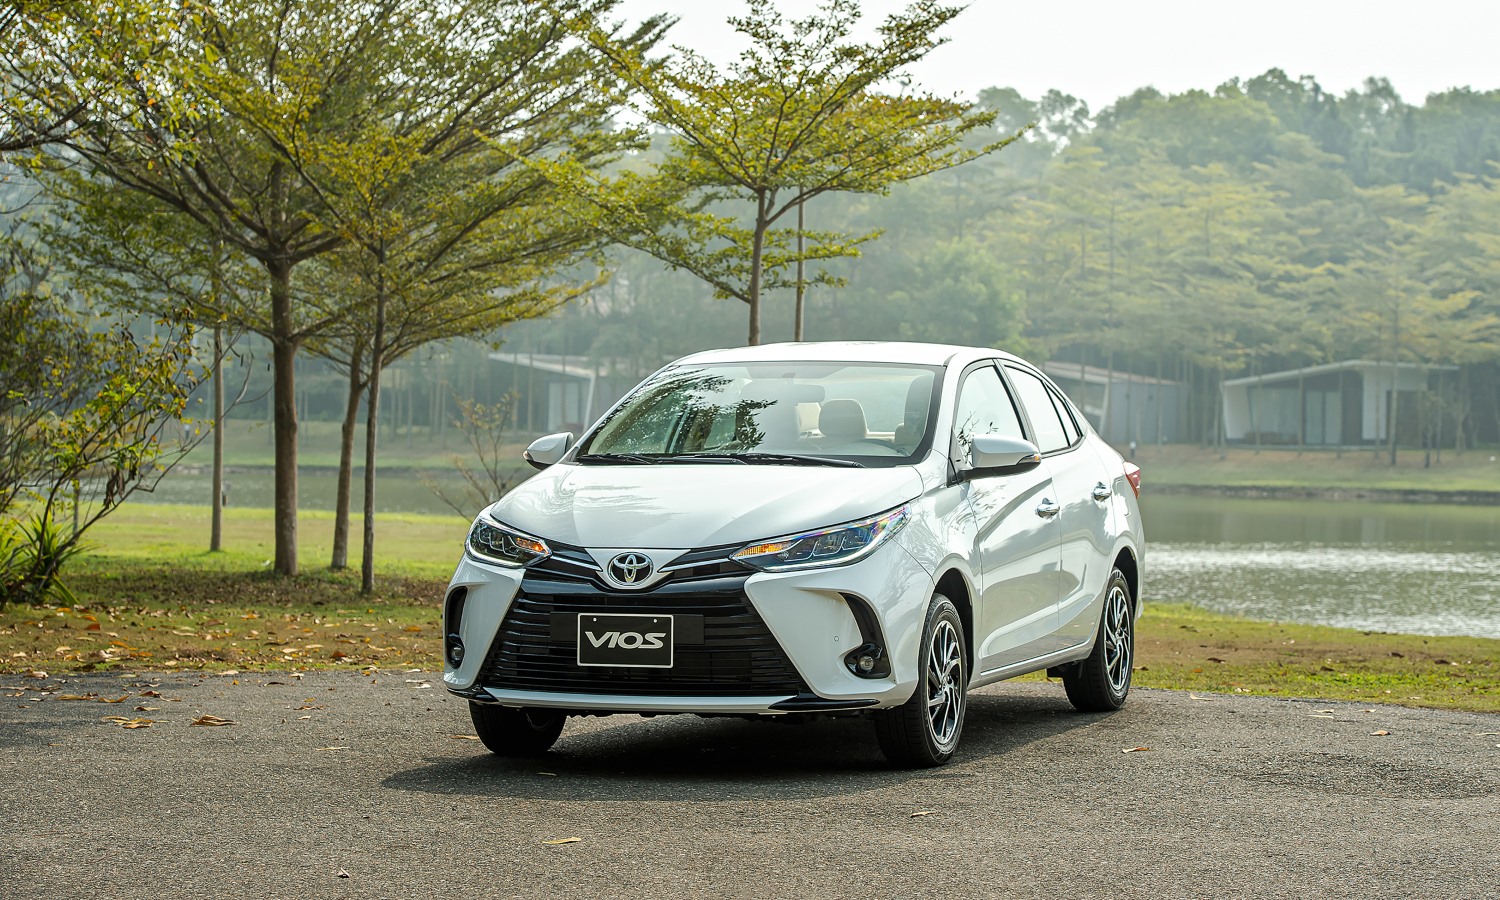 Sau bước chạy đà khá chậm chạp, Toyota Vios đang lấy lại đà tăng trưởng. Doanh số bán mẫu xe này trong tháng 3.2023 đạt 1.050 xe, tăng 180 xe so với tháng 2.2023. Đây là tháng thứ 2 liên tiếp Vios góp mặt trong Top 10 ô tô bán chạy nhất Việt Nam. Năm ngoái, Toyota Vios là mẫu ô tô bán chạy nhất Việt Nam. Hiện tại, Vios đang được Toyota lắp ráp, phân phối tại Việt Nam với giá từ 489 - 649 triệu đồng. Ảnh: Toyota.